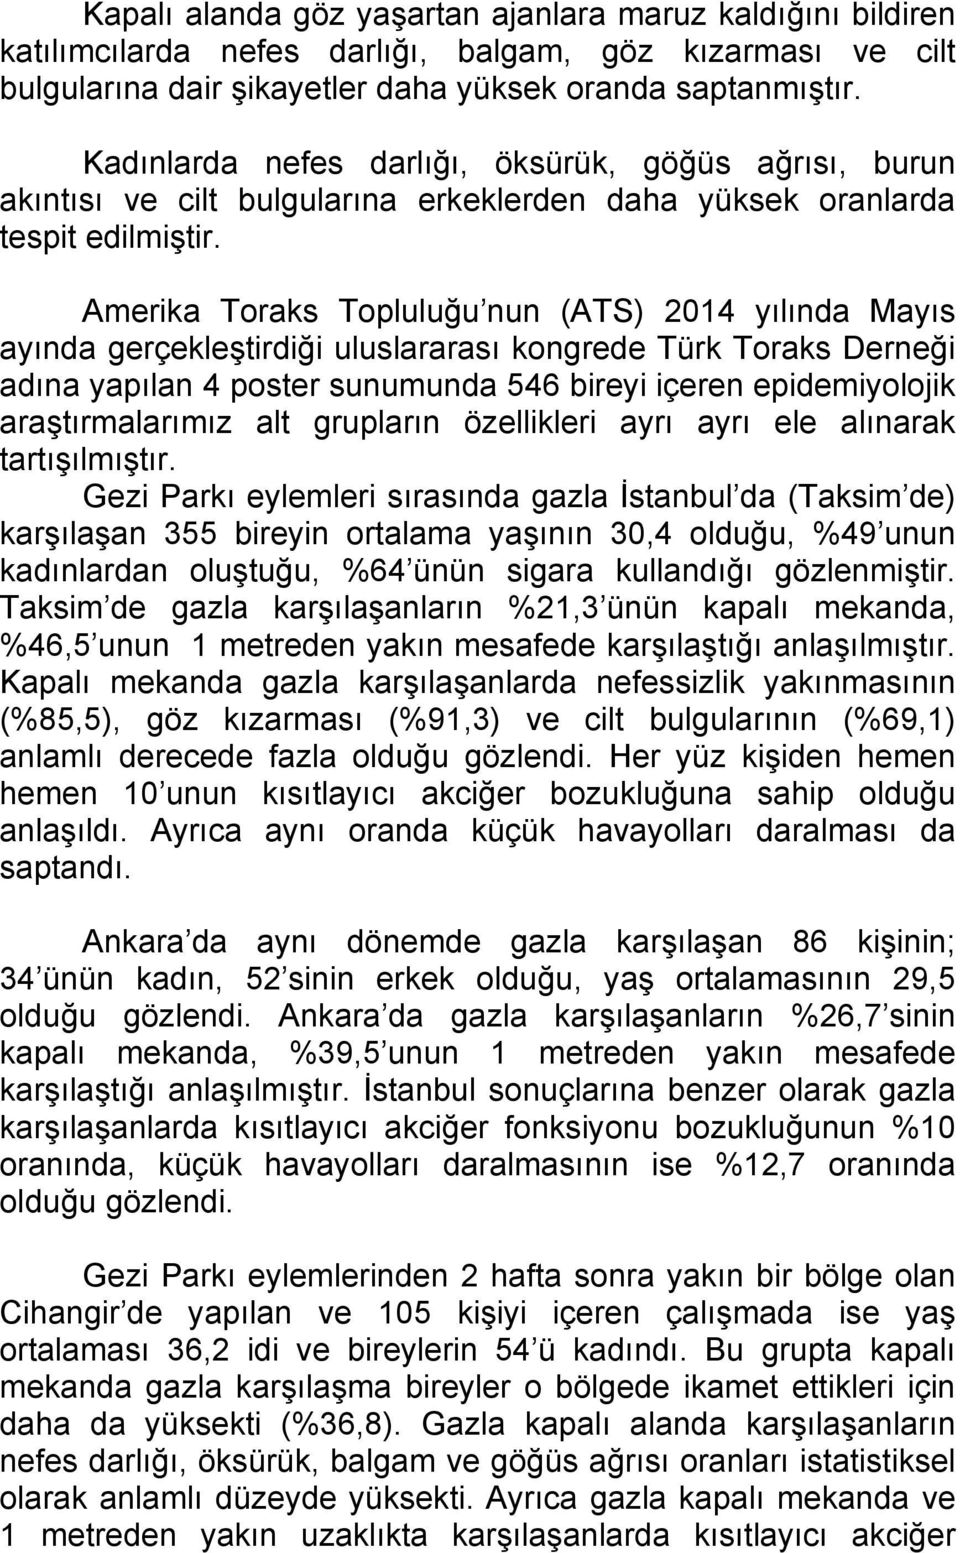 Amerika Toraks Topluluğu nun (ATS) 2014 yılında Mayıs ayında gerçekleştirdiği uluslararası kongrede Türk Toraks Derneği adına yapılan 4 poster sunumunda 546 bireyi içeren epidemiyolojik